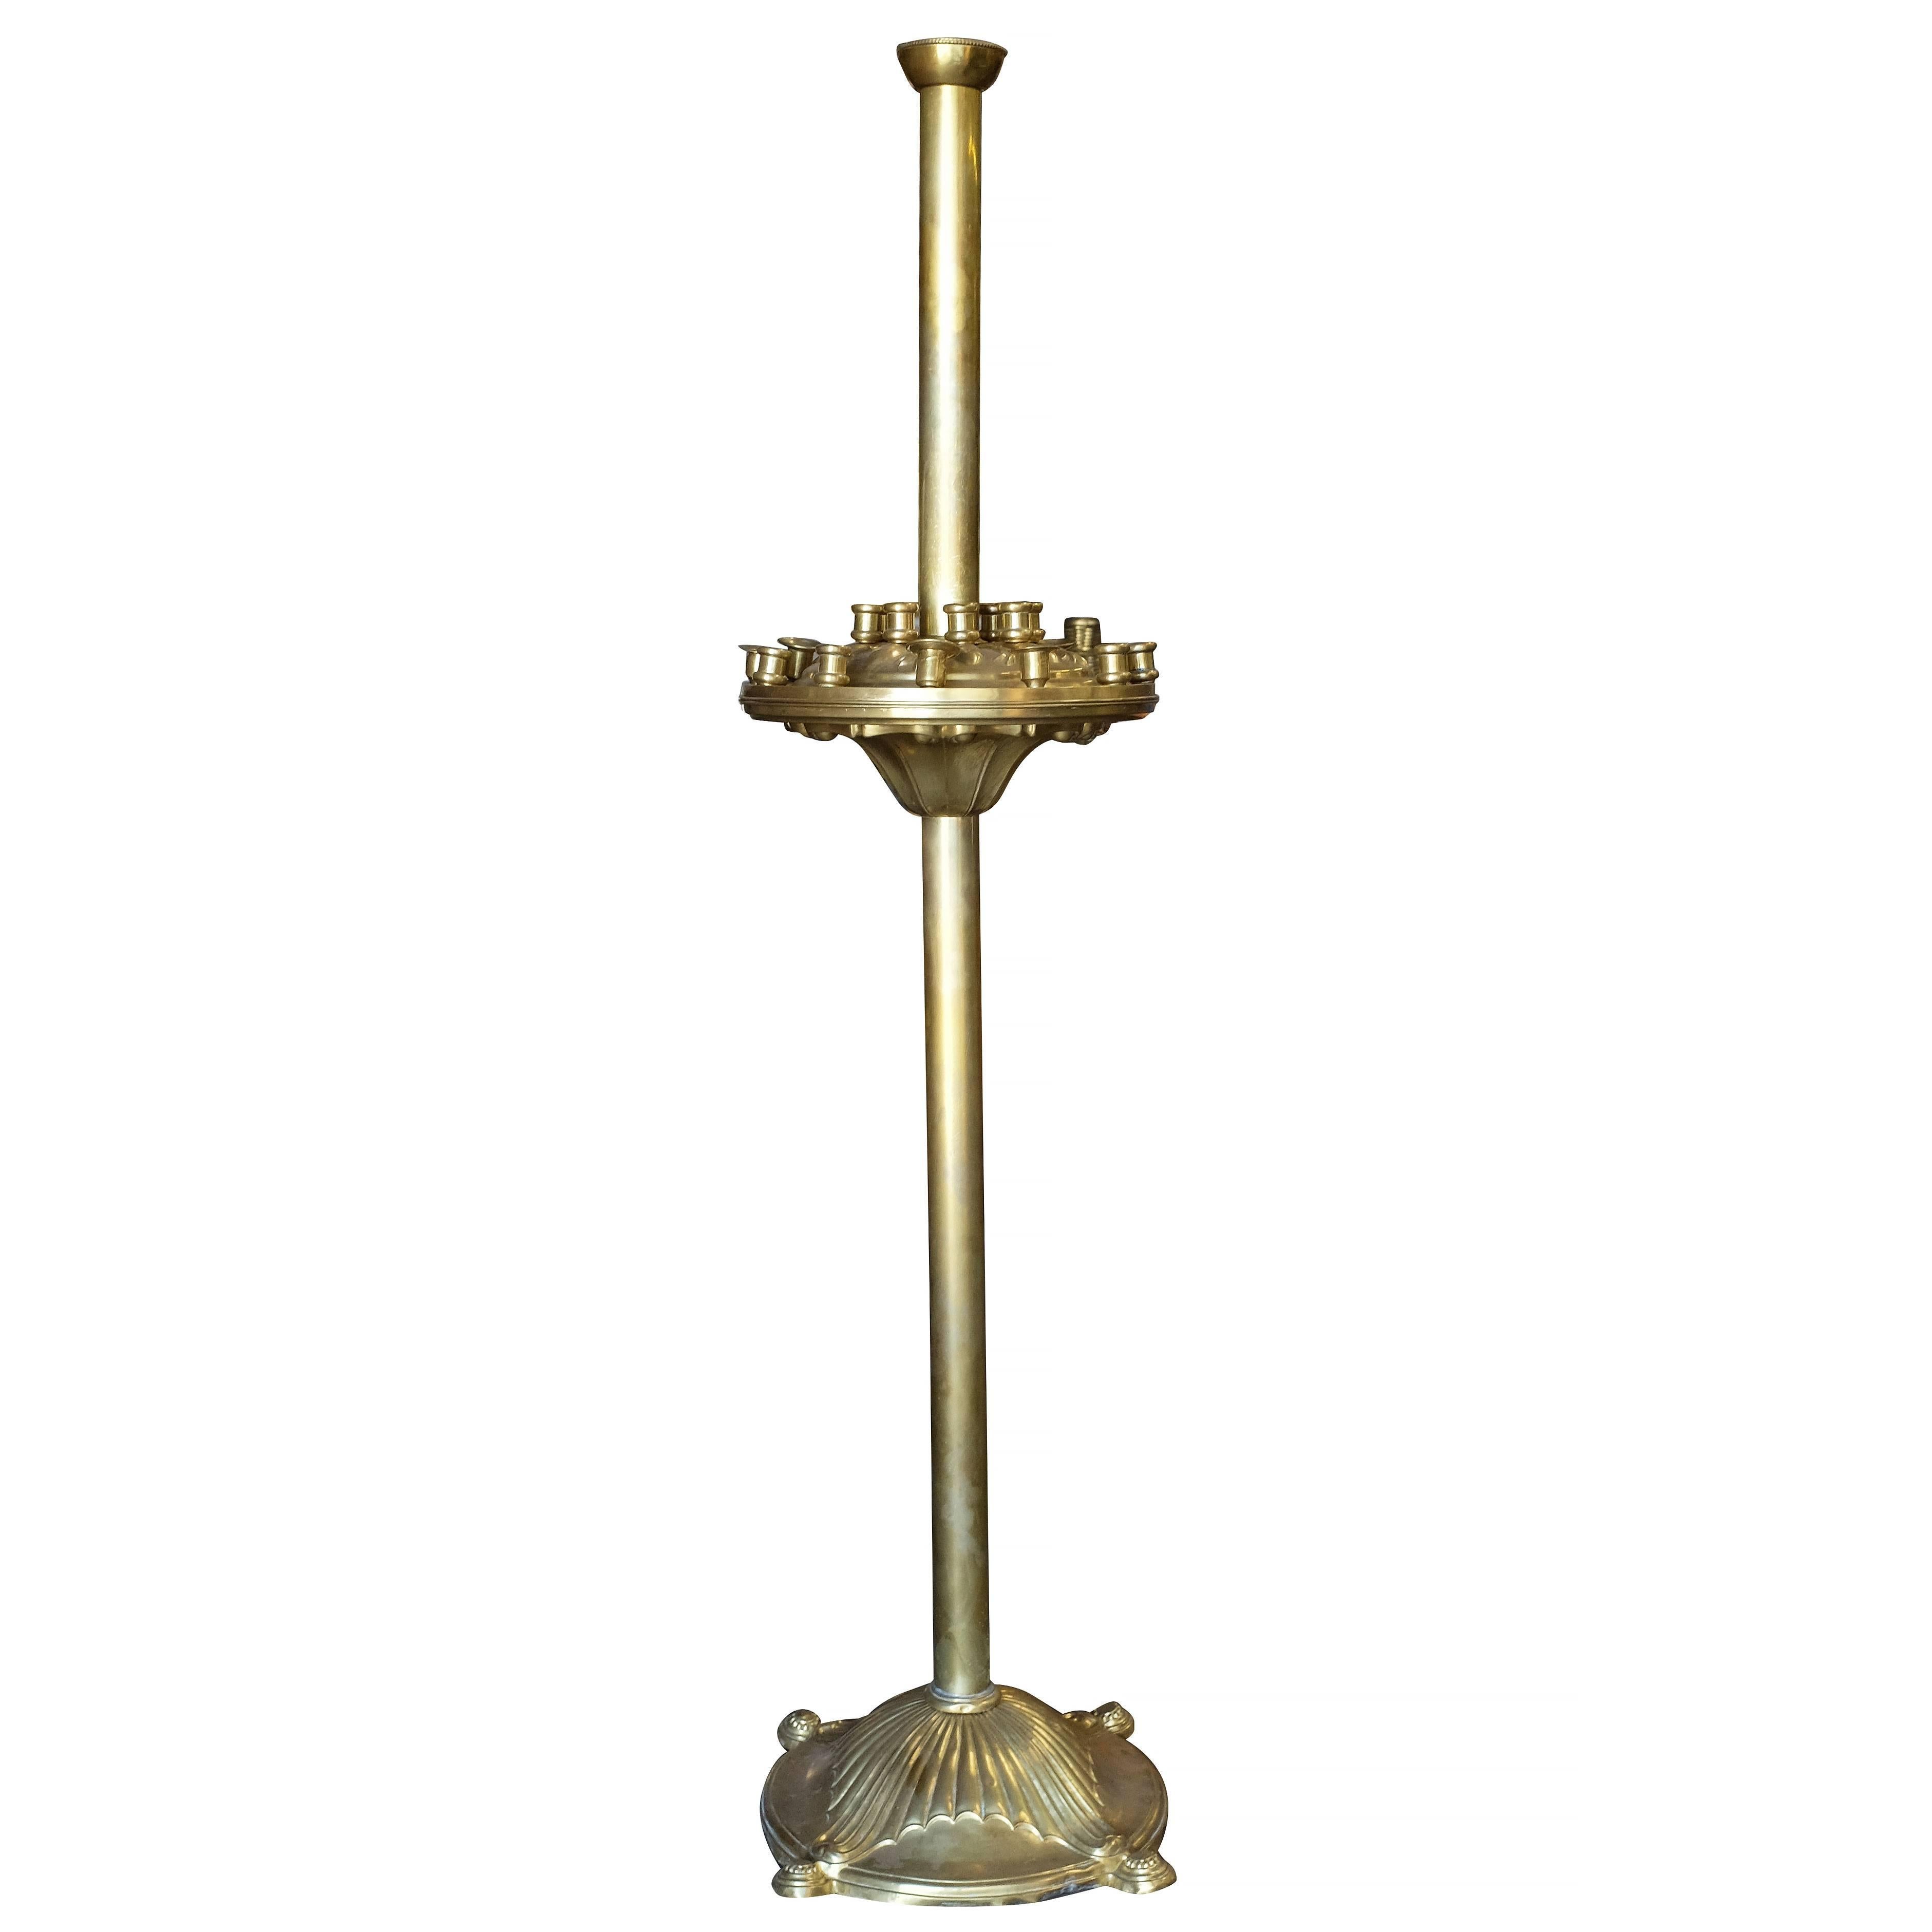 chandelier de sol cérémonial à 24 bougies en laiton que l'on trouve généralement dans les églises catholiques orthodoxes,

vers 1920.

   